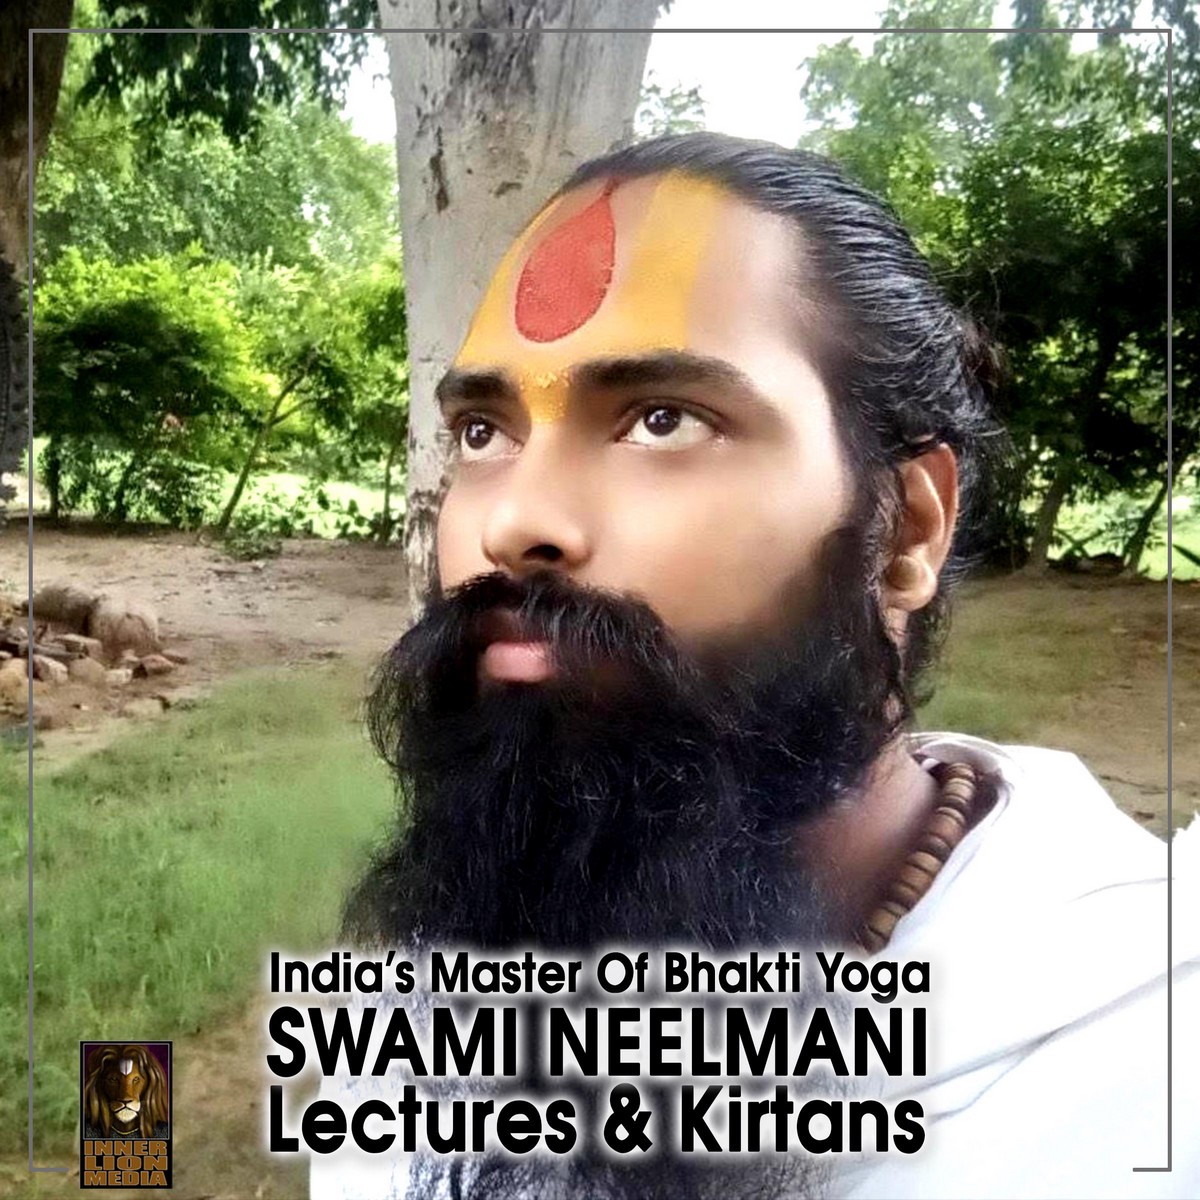 India’s Master Of Bhakti Yoga Swami Neelmani Lectures & Kirtans